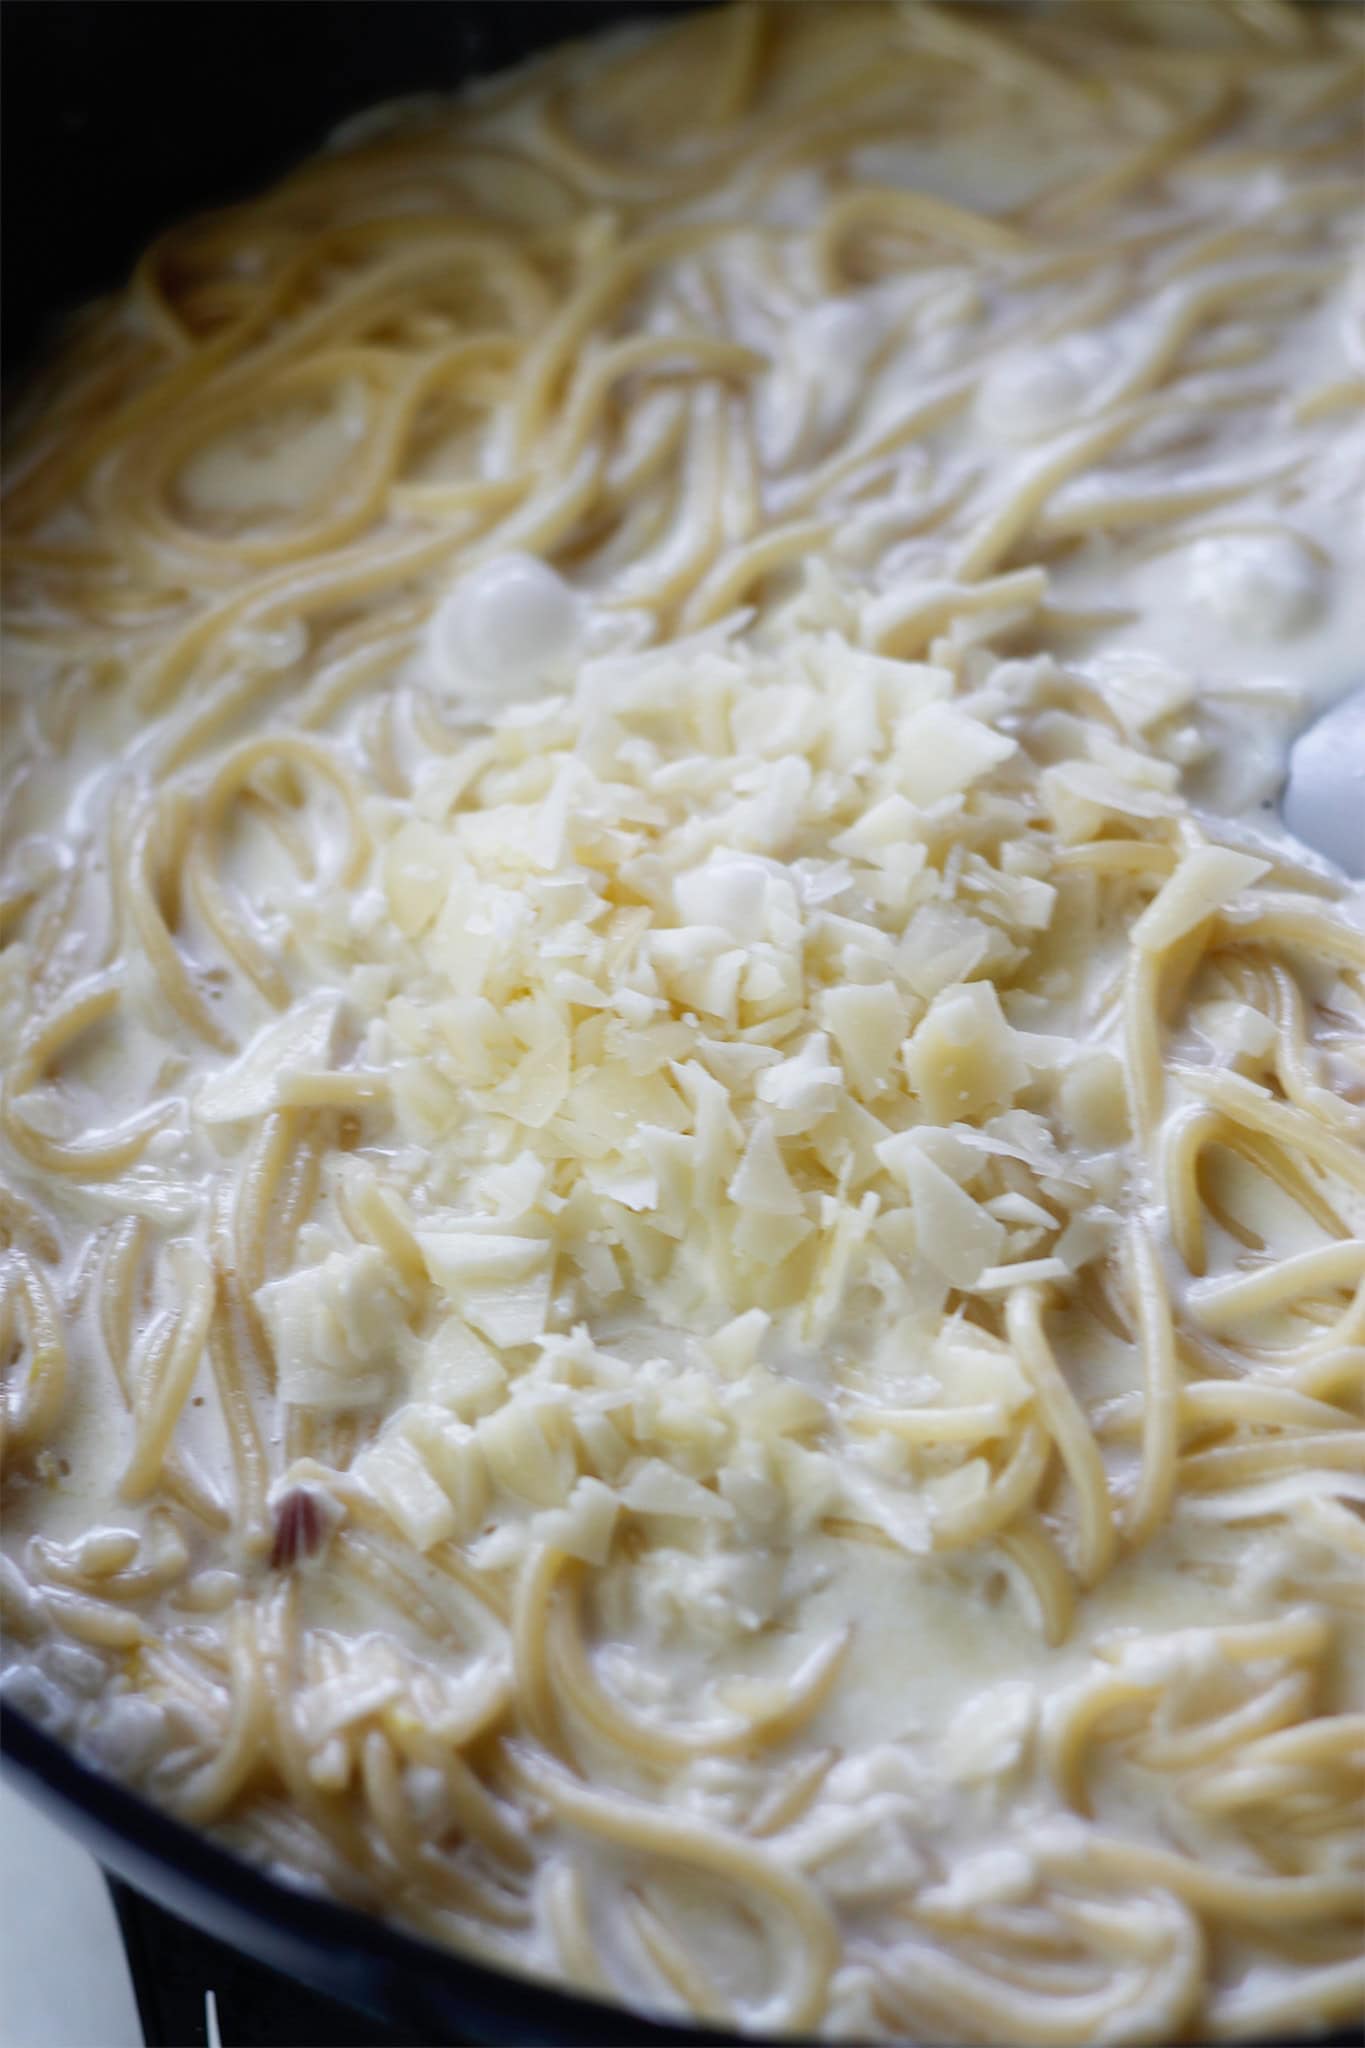 Adding cheese to pasta and cream sauce.